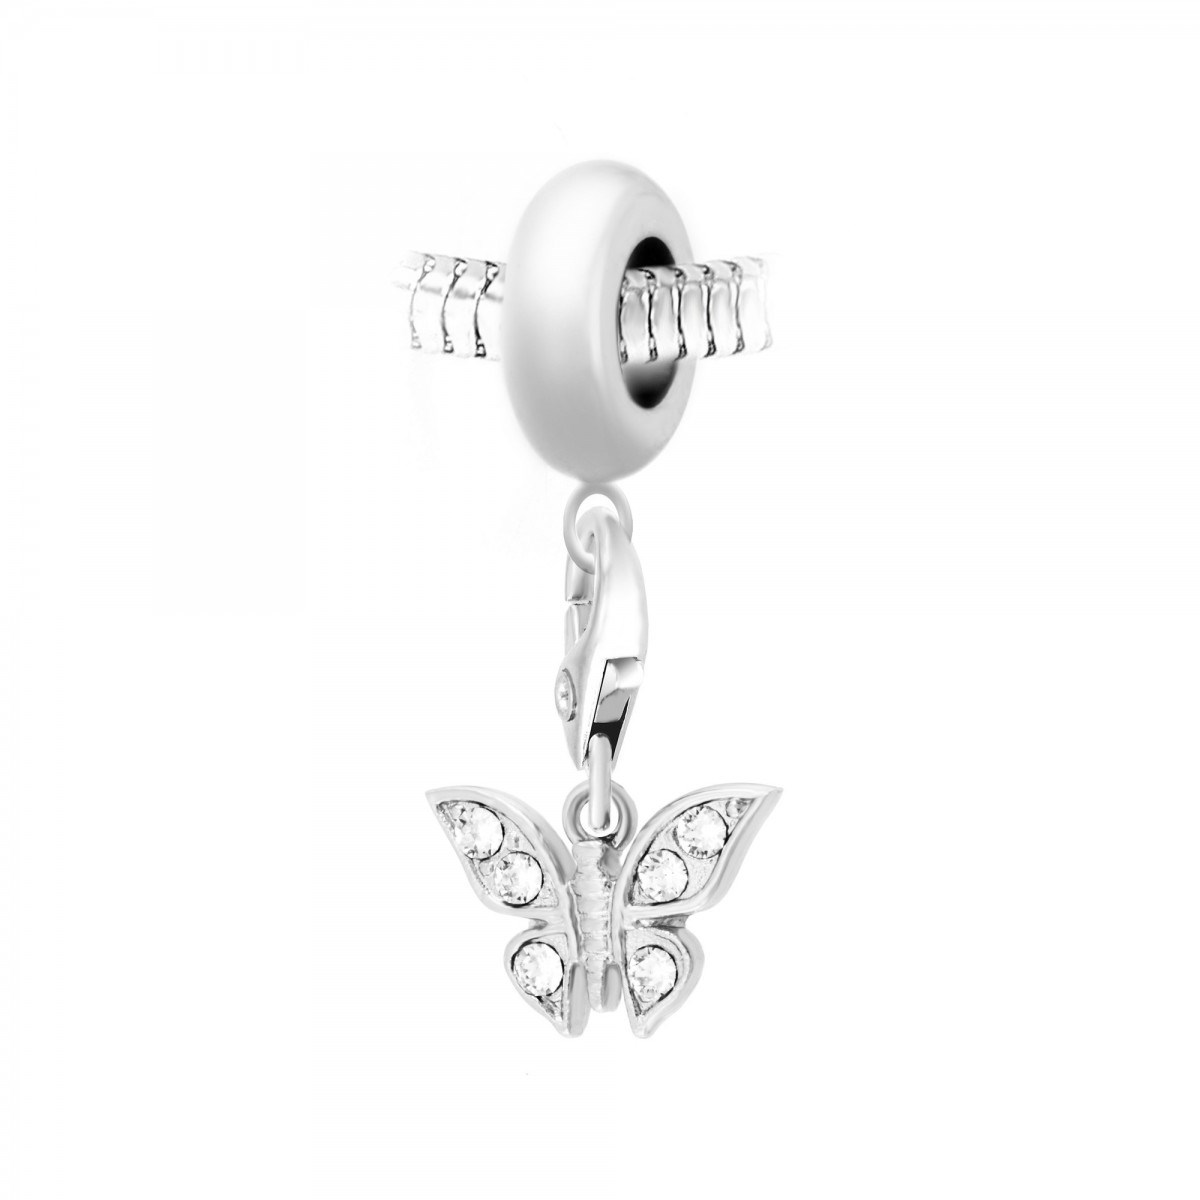 Charm perle SC Crystal en acier avec pendentif papillon SC Crystal orné de Cristaux scintillants